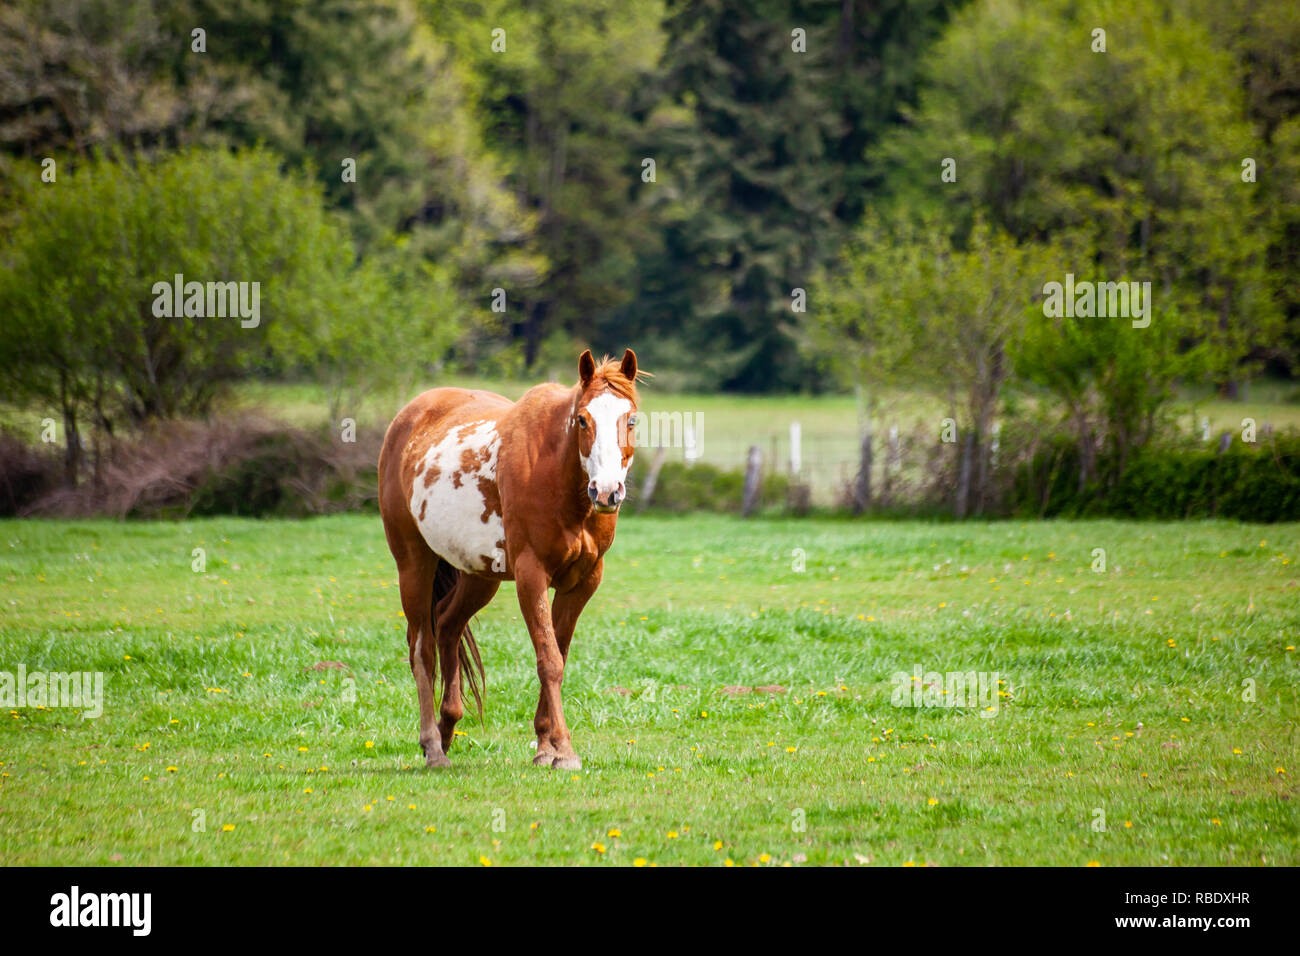 Eine braune und weiße Sauerampfer Pinto Pferd mit Glatze Gesicht und Heterochromia iridium Augen wandern im Frühling weide Wiese Stockfoto